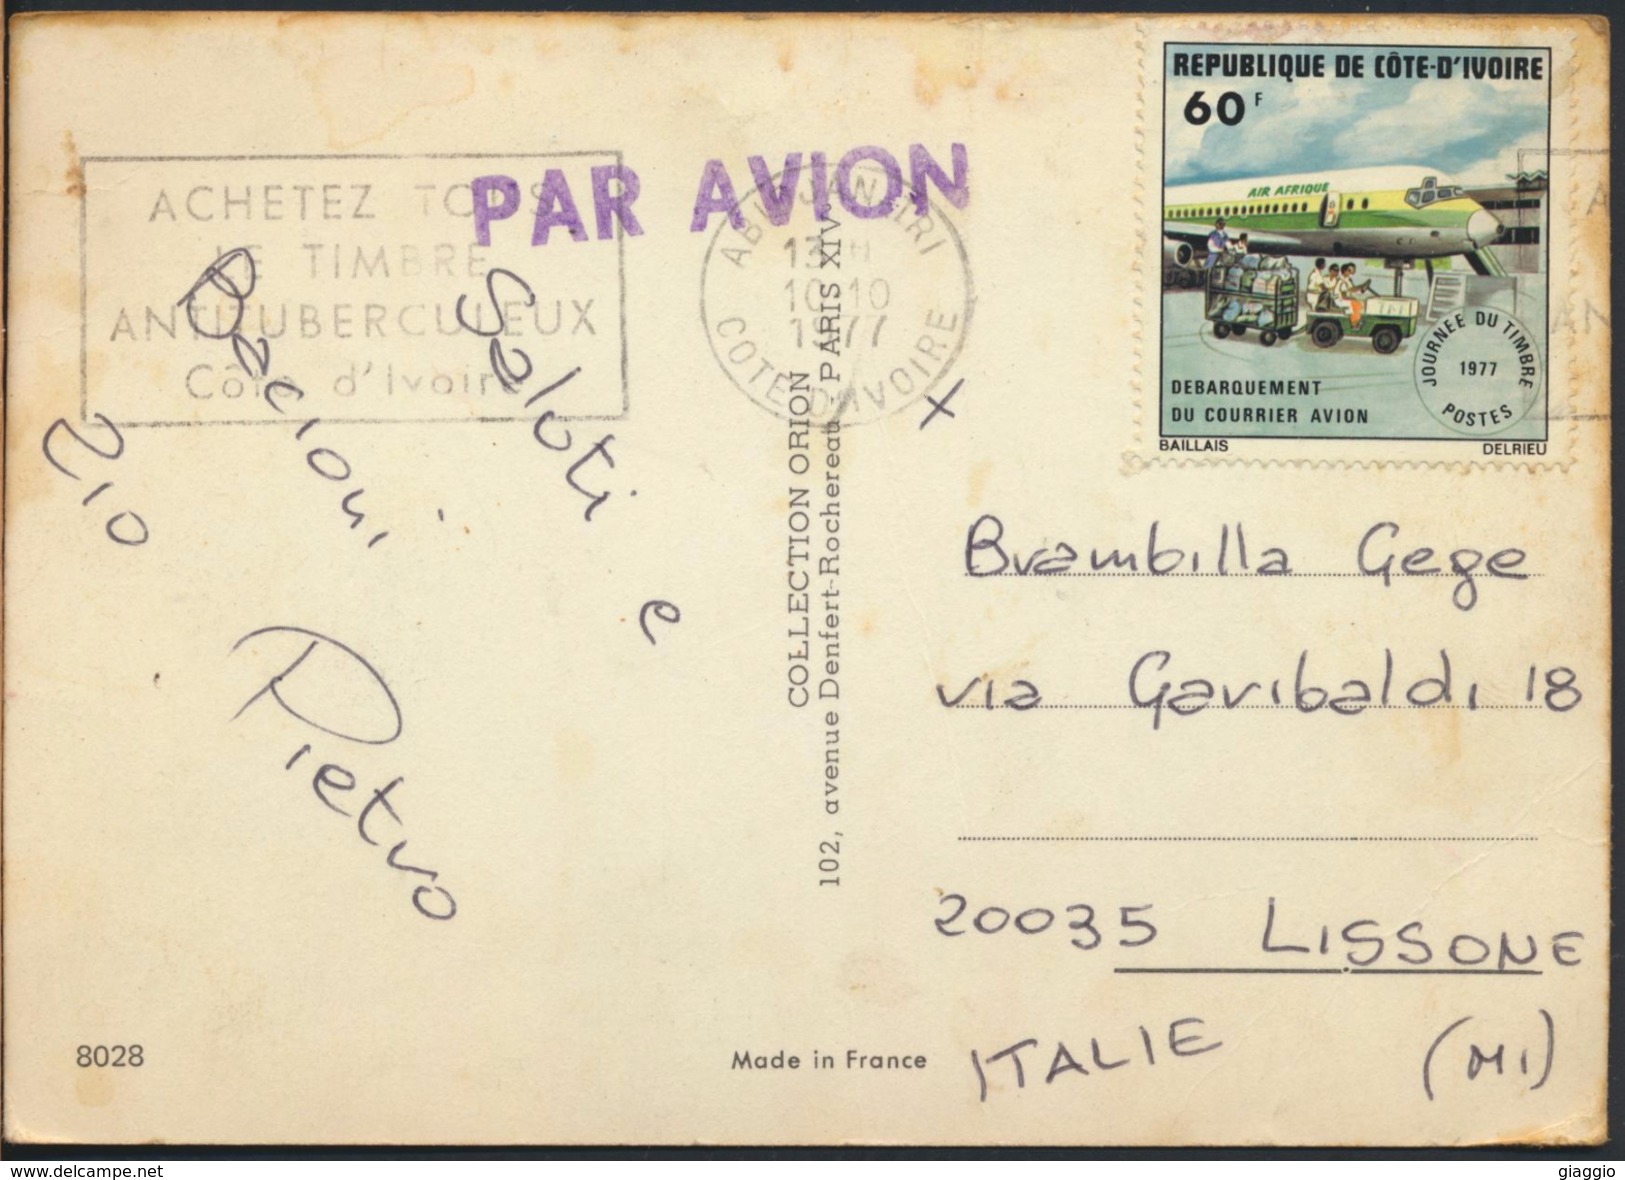 °°° 3980 - COTE D'IVOIRE - LE PATRON UN JOUR D'AUGMENTATION - 1977 With Stamps °°° - Elfenbeinküste